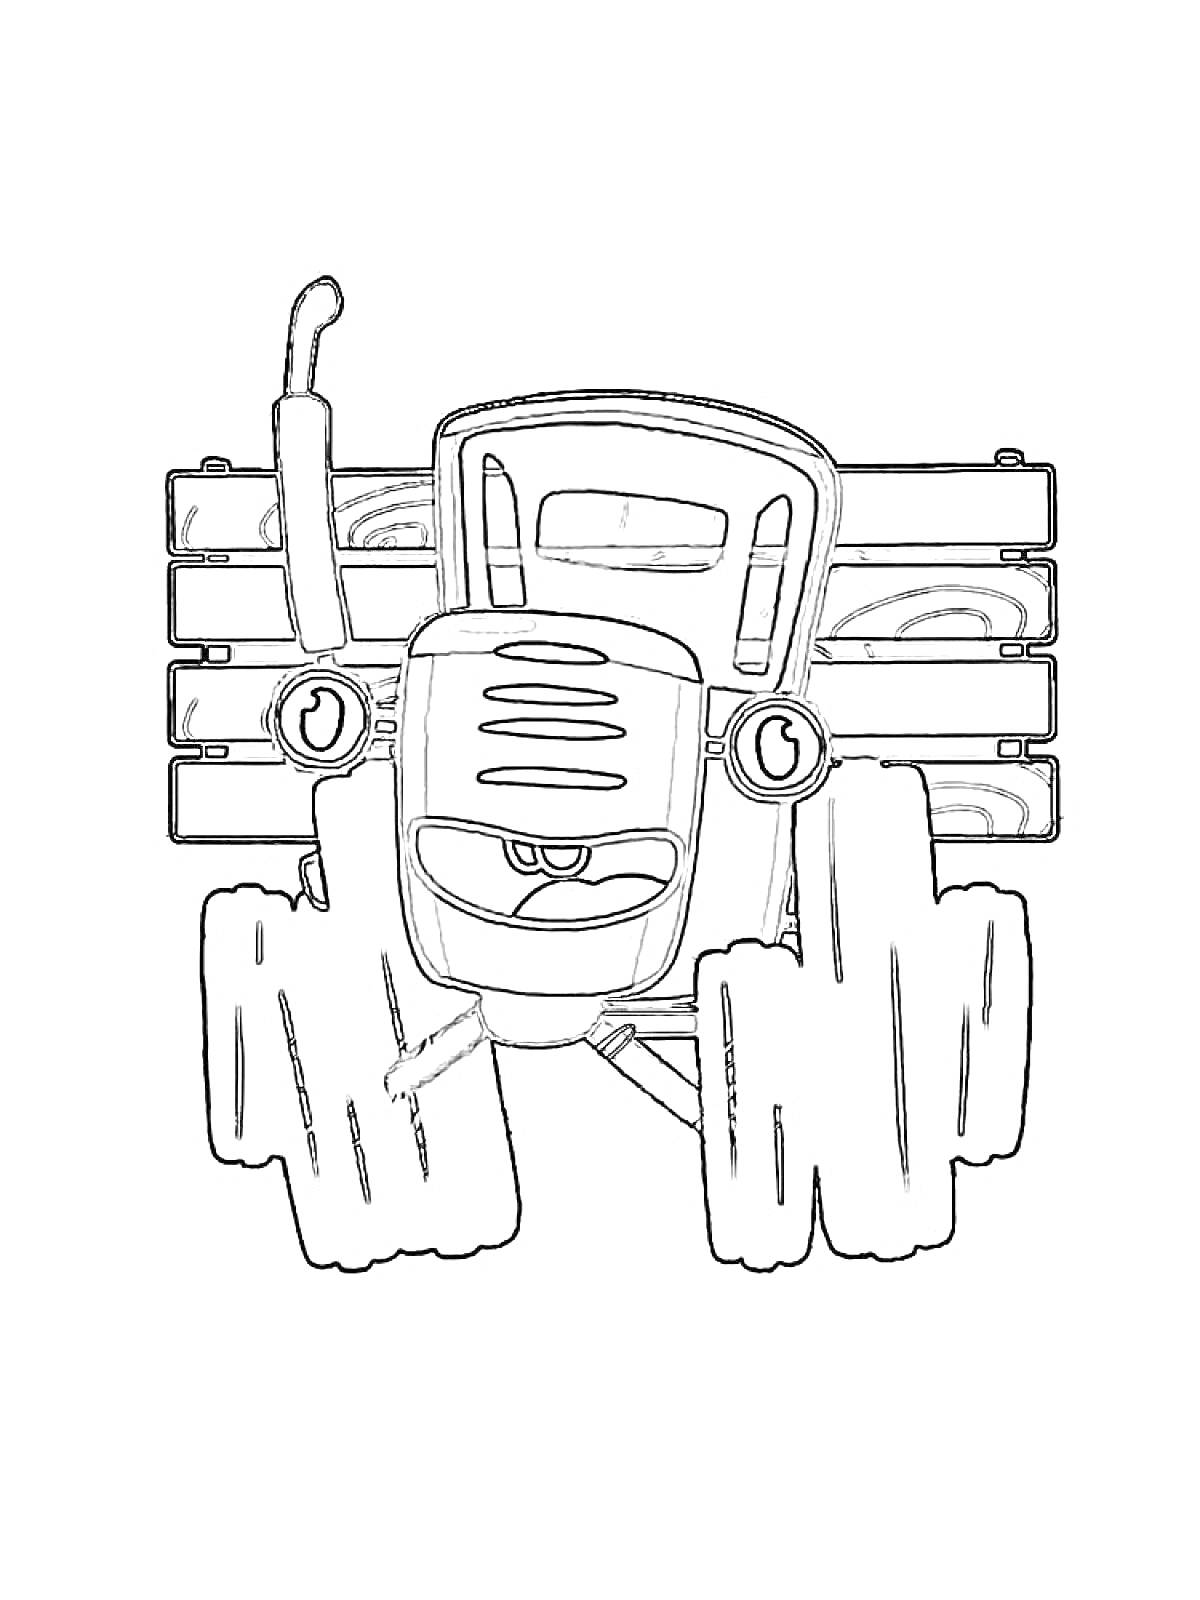 Раскраска Синий трактор с большими колесами и деревянным забором на заднем плане